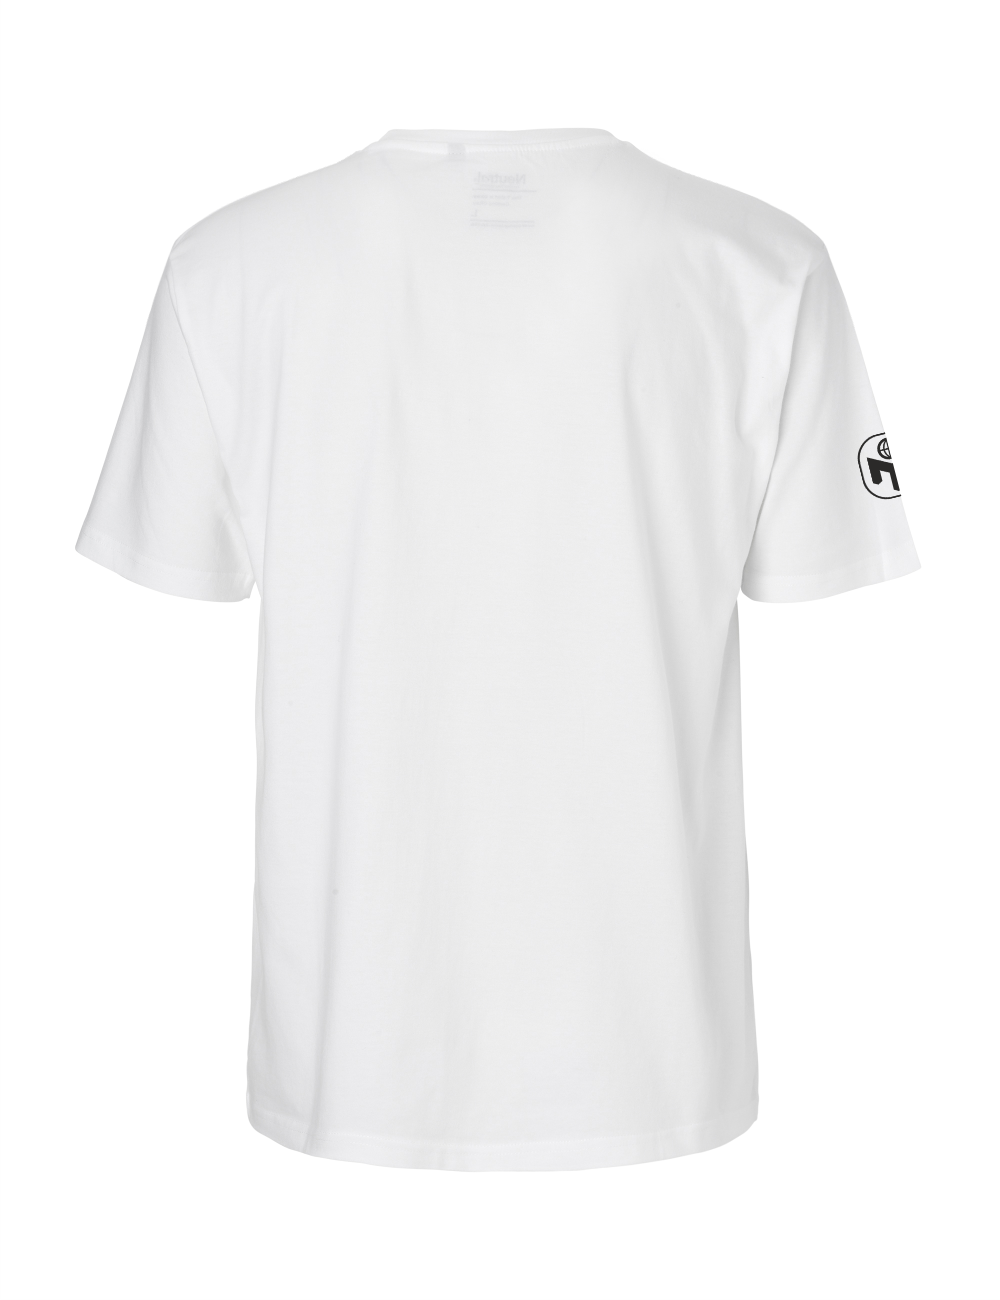 T-Shirt Herren "GO-Antrag" Premium